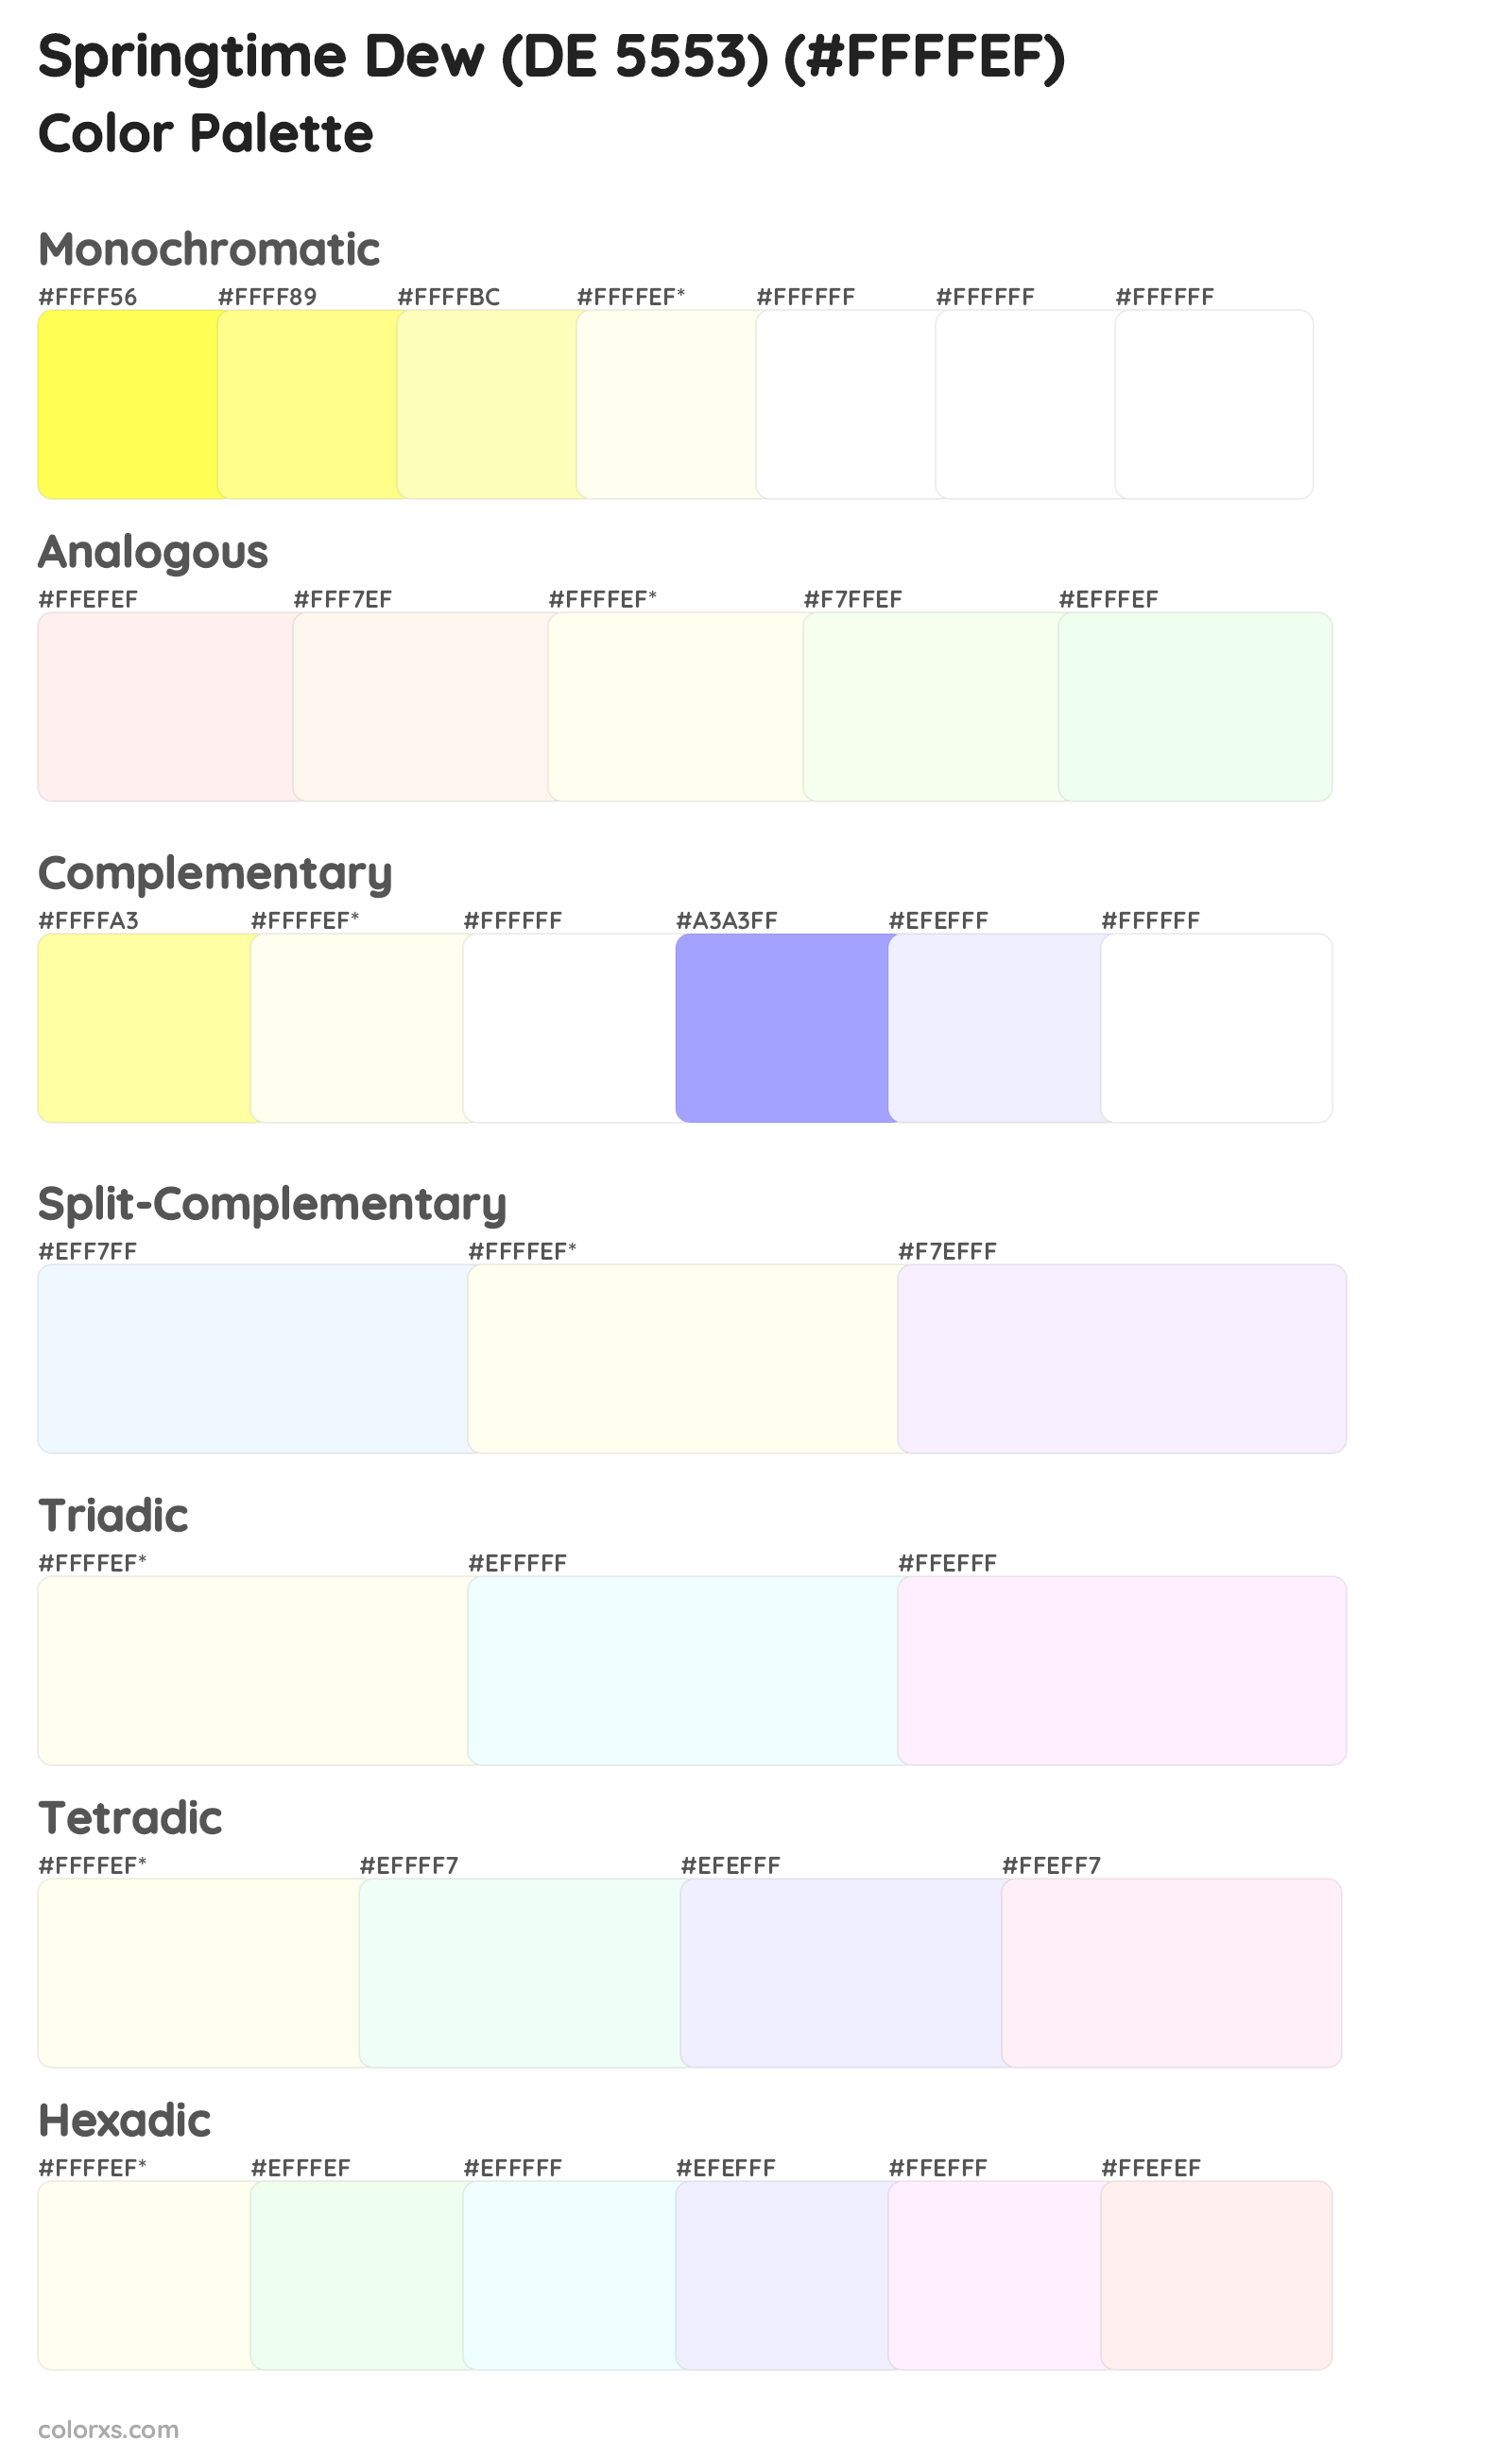 Springtime Dew (DE 5553) Color Scheme Palettes